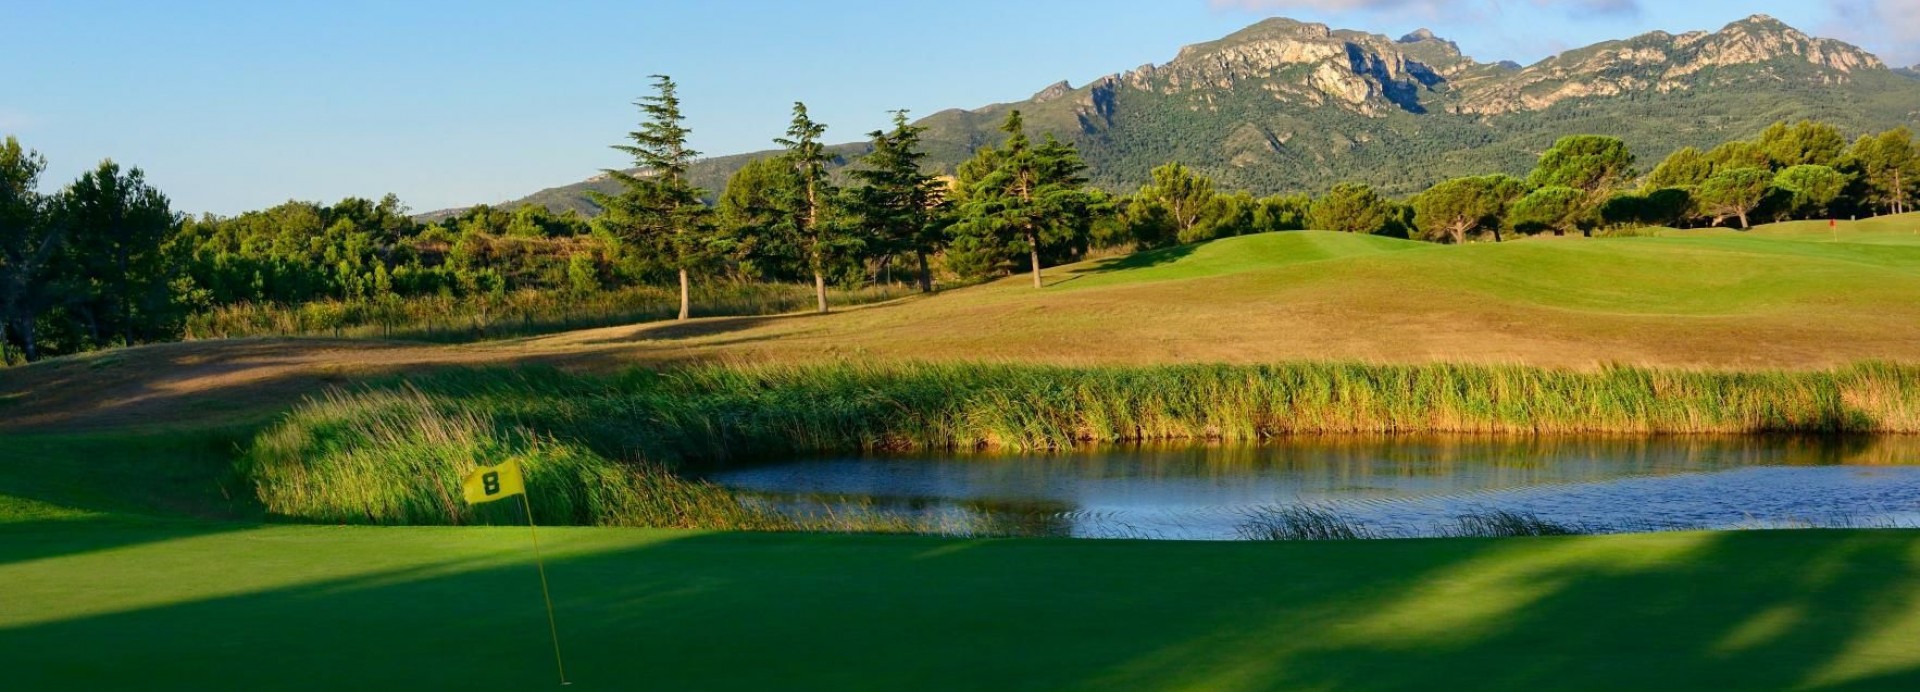 Bonmont golf club  | Golfové zájezdy, golfová dovolená, luxusní golf